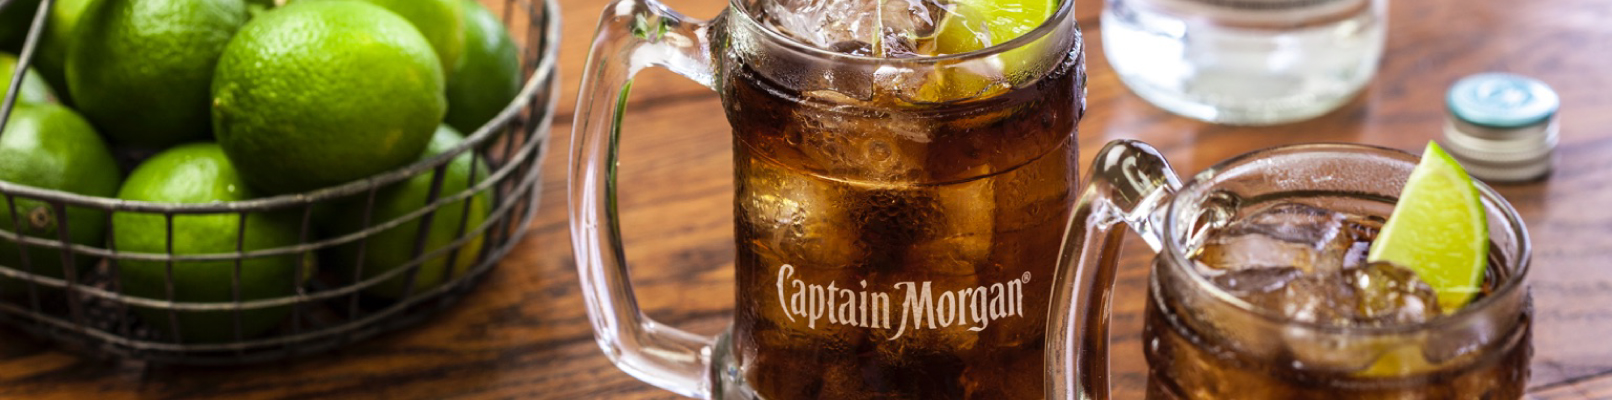 Коктейли с ромом Captain Morgan: пей, как пират